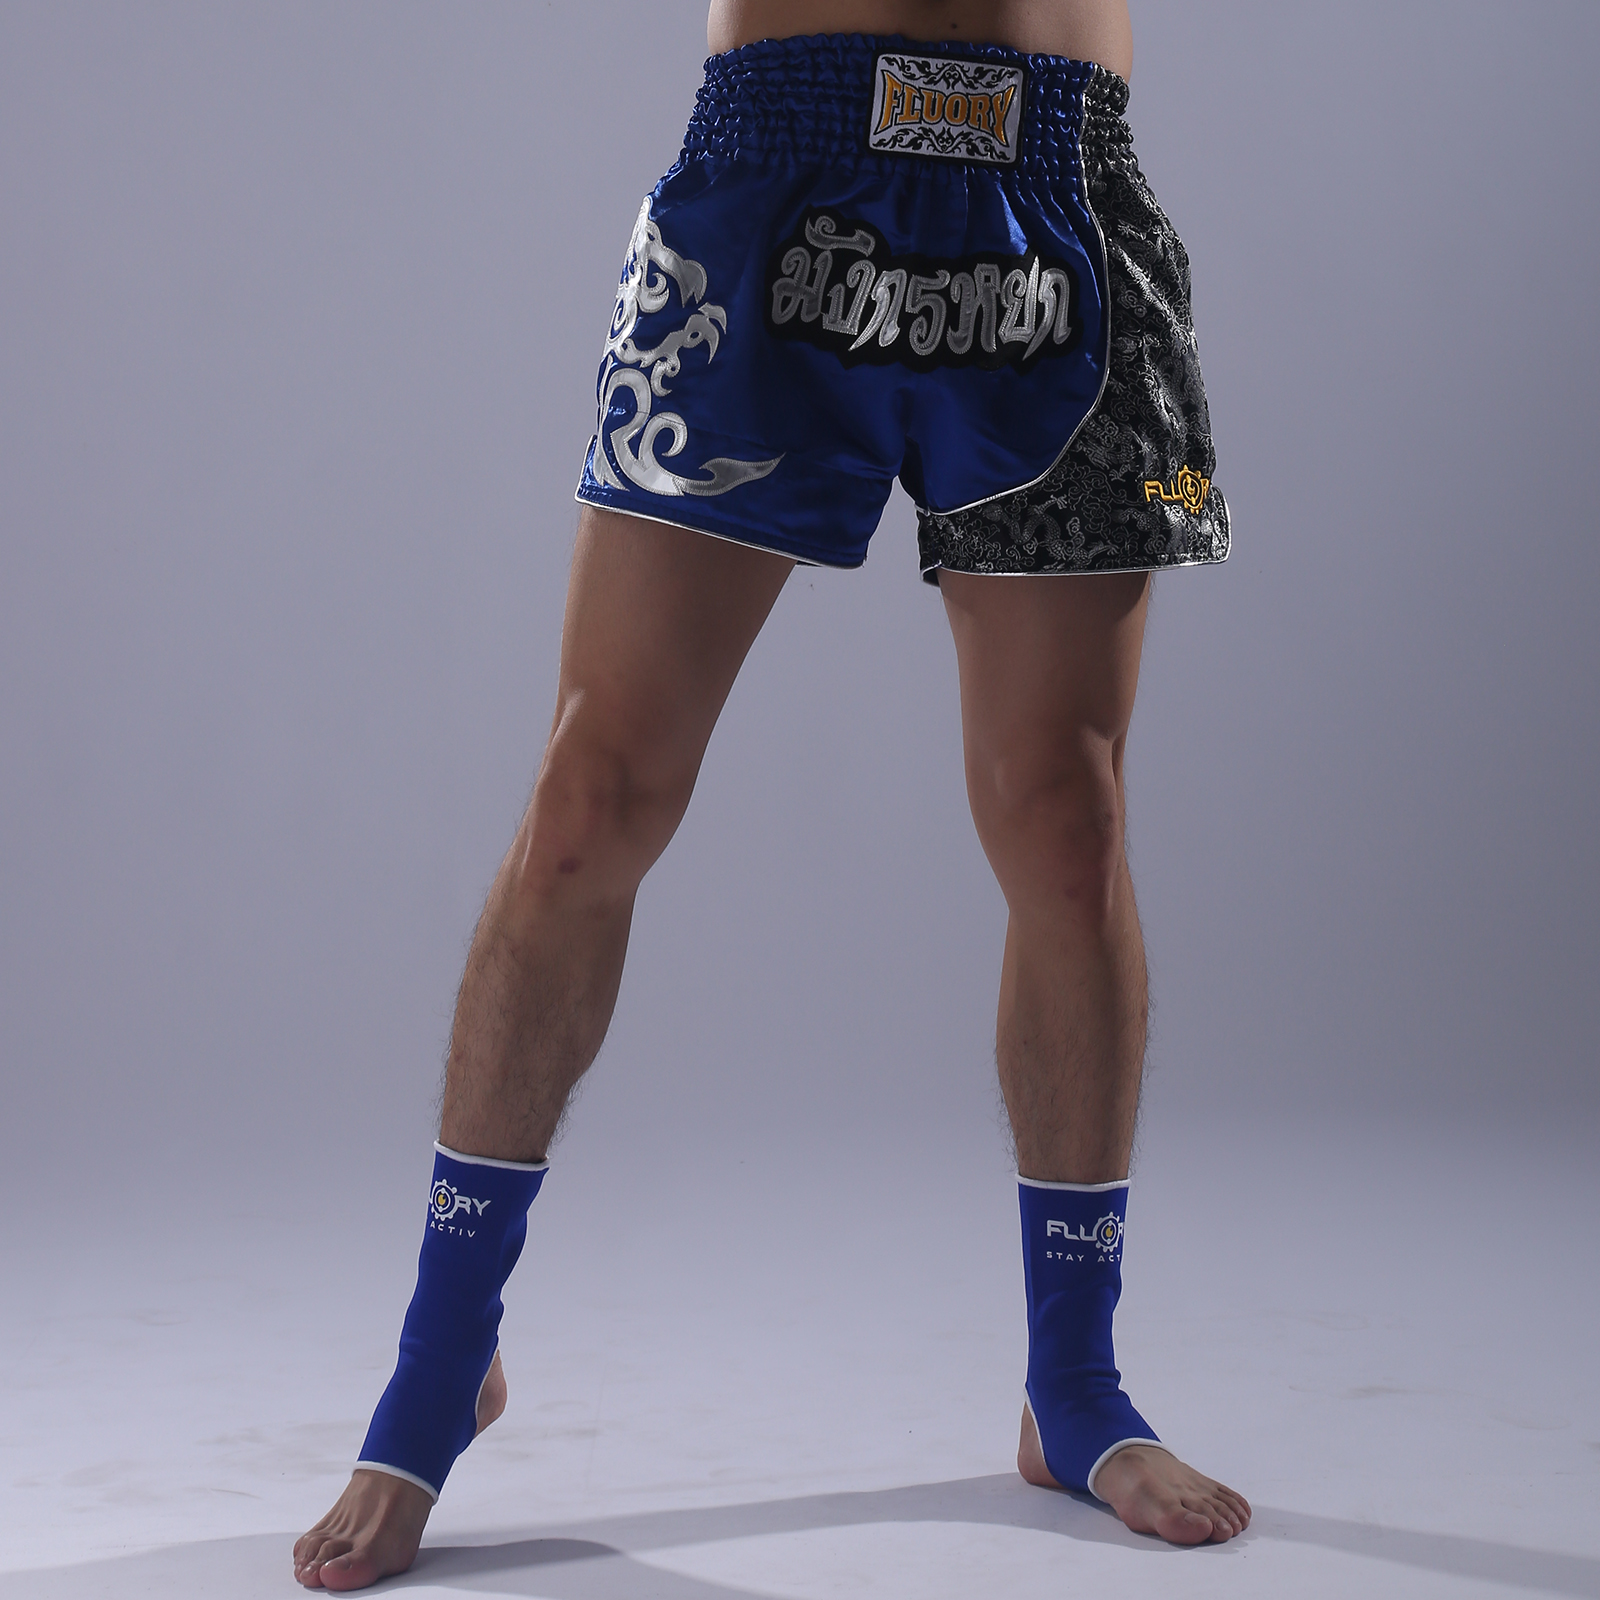 FLUORY Pantalones Cortos Muay Thai, Pantalones Cortos Deportivos Con  Bordados Para Hombres, Entrenamiento De Boxeo, Entrenamiento De Lucha